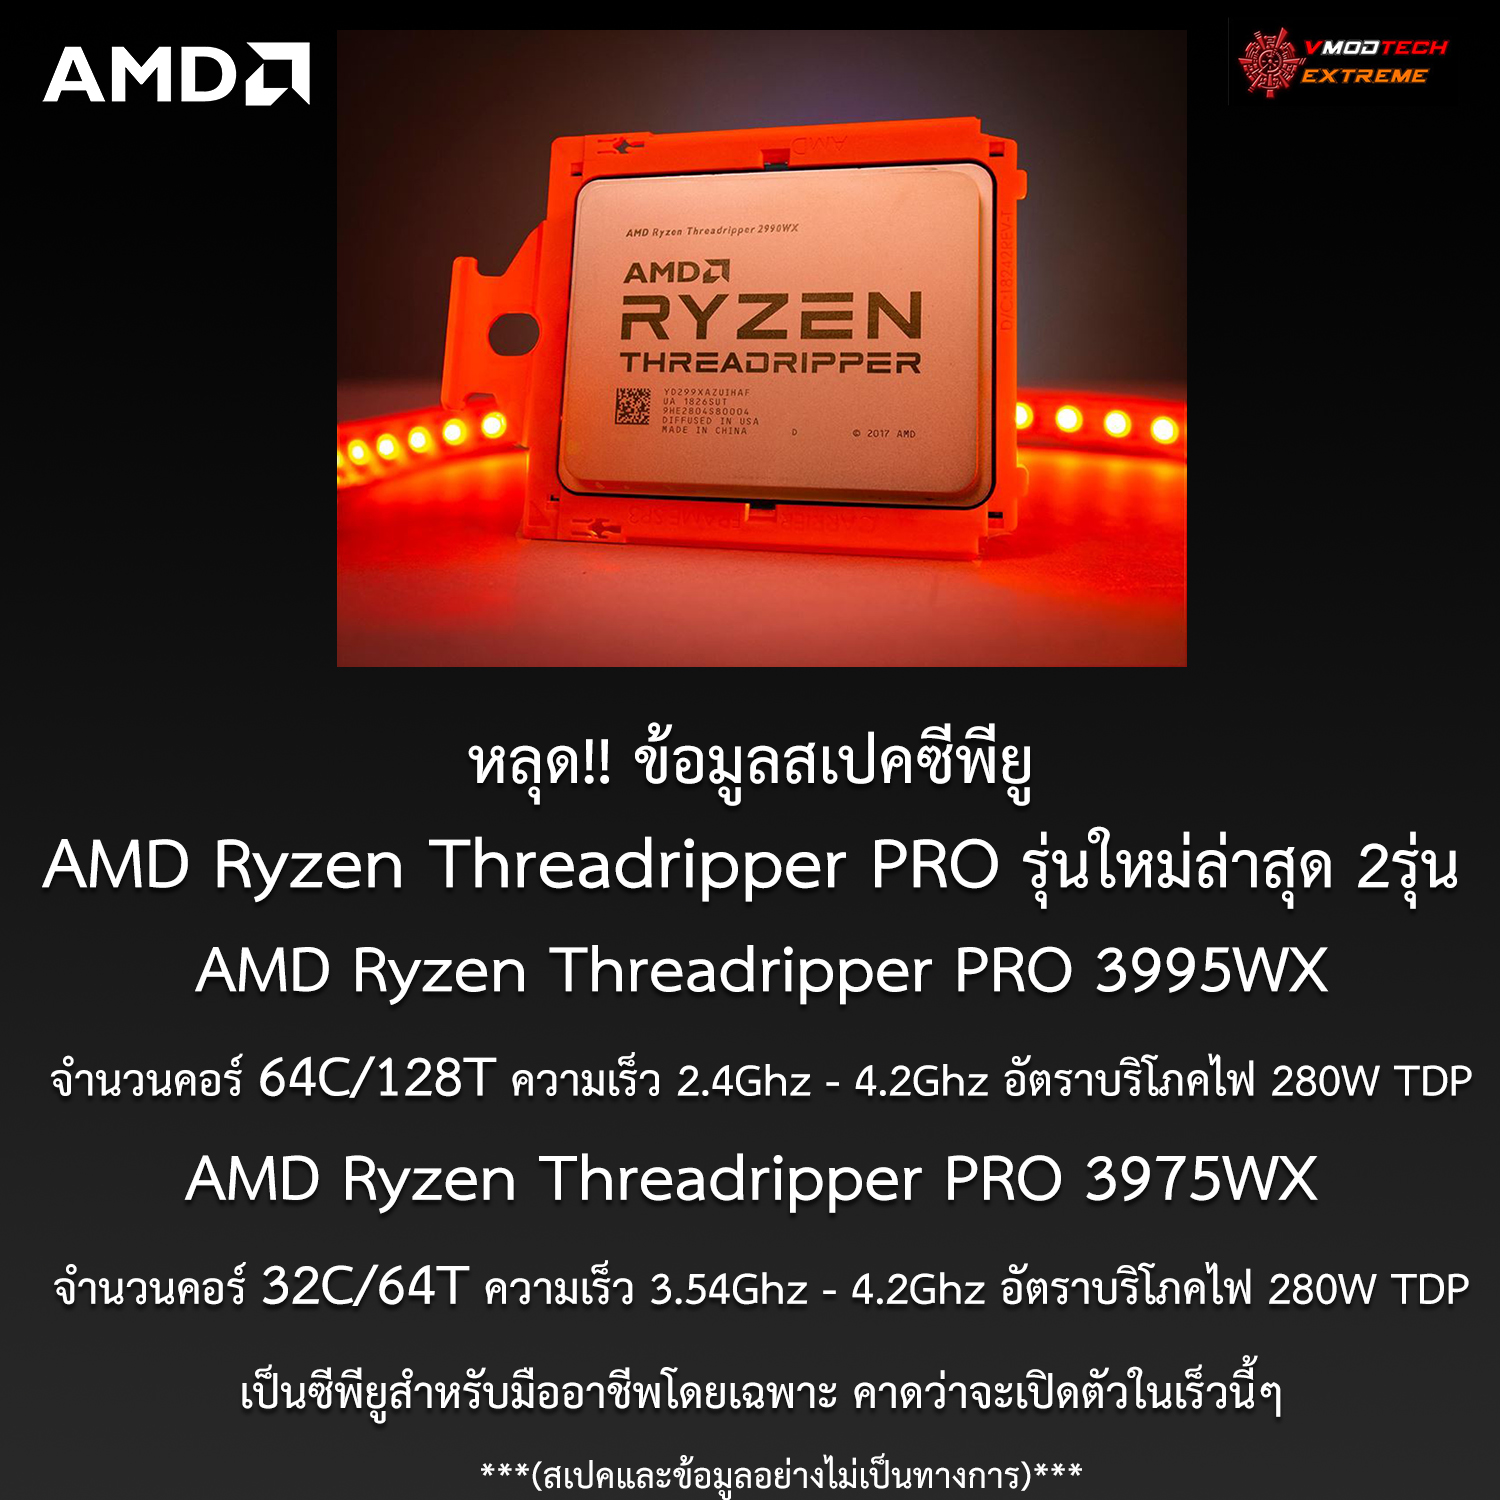 หลุด!! ข้อมูลสเปคซีพียู AMD Ryzen Threadripper PRO 3995WX และ 3975WX มีจำนวนคอร์มากถึง 64คอร์ 128เทรดกันเลยทีเดียว!!! 